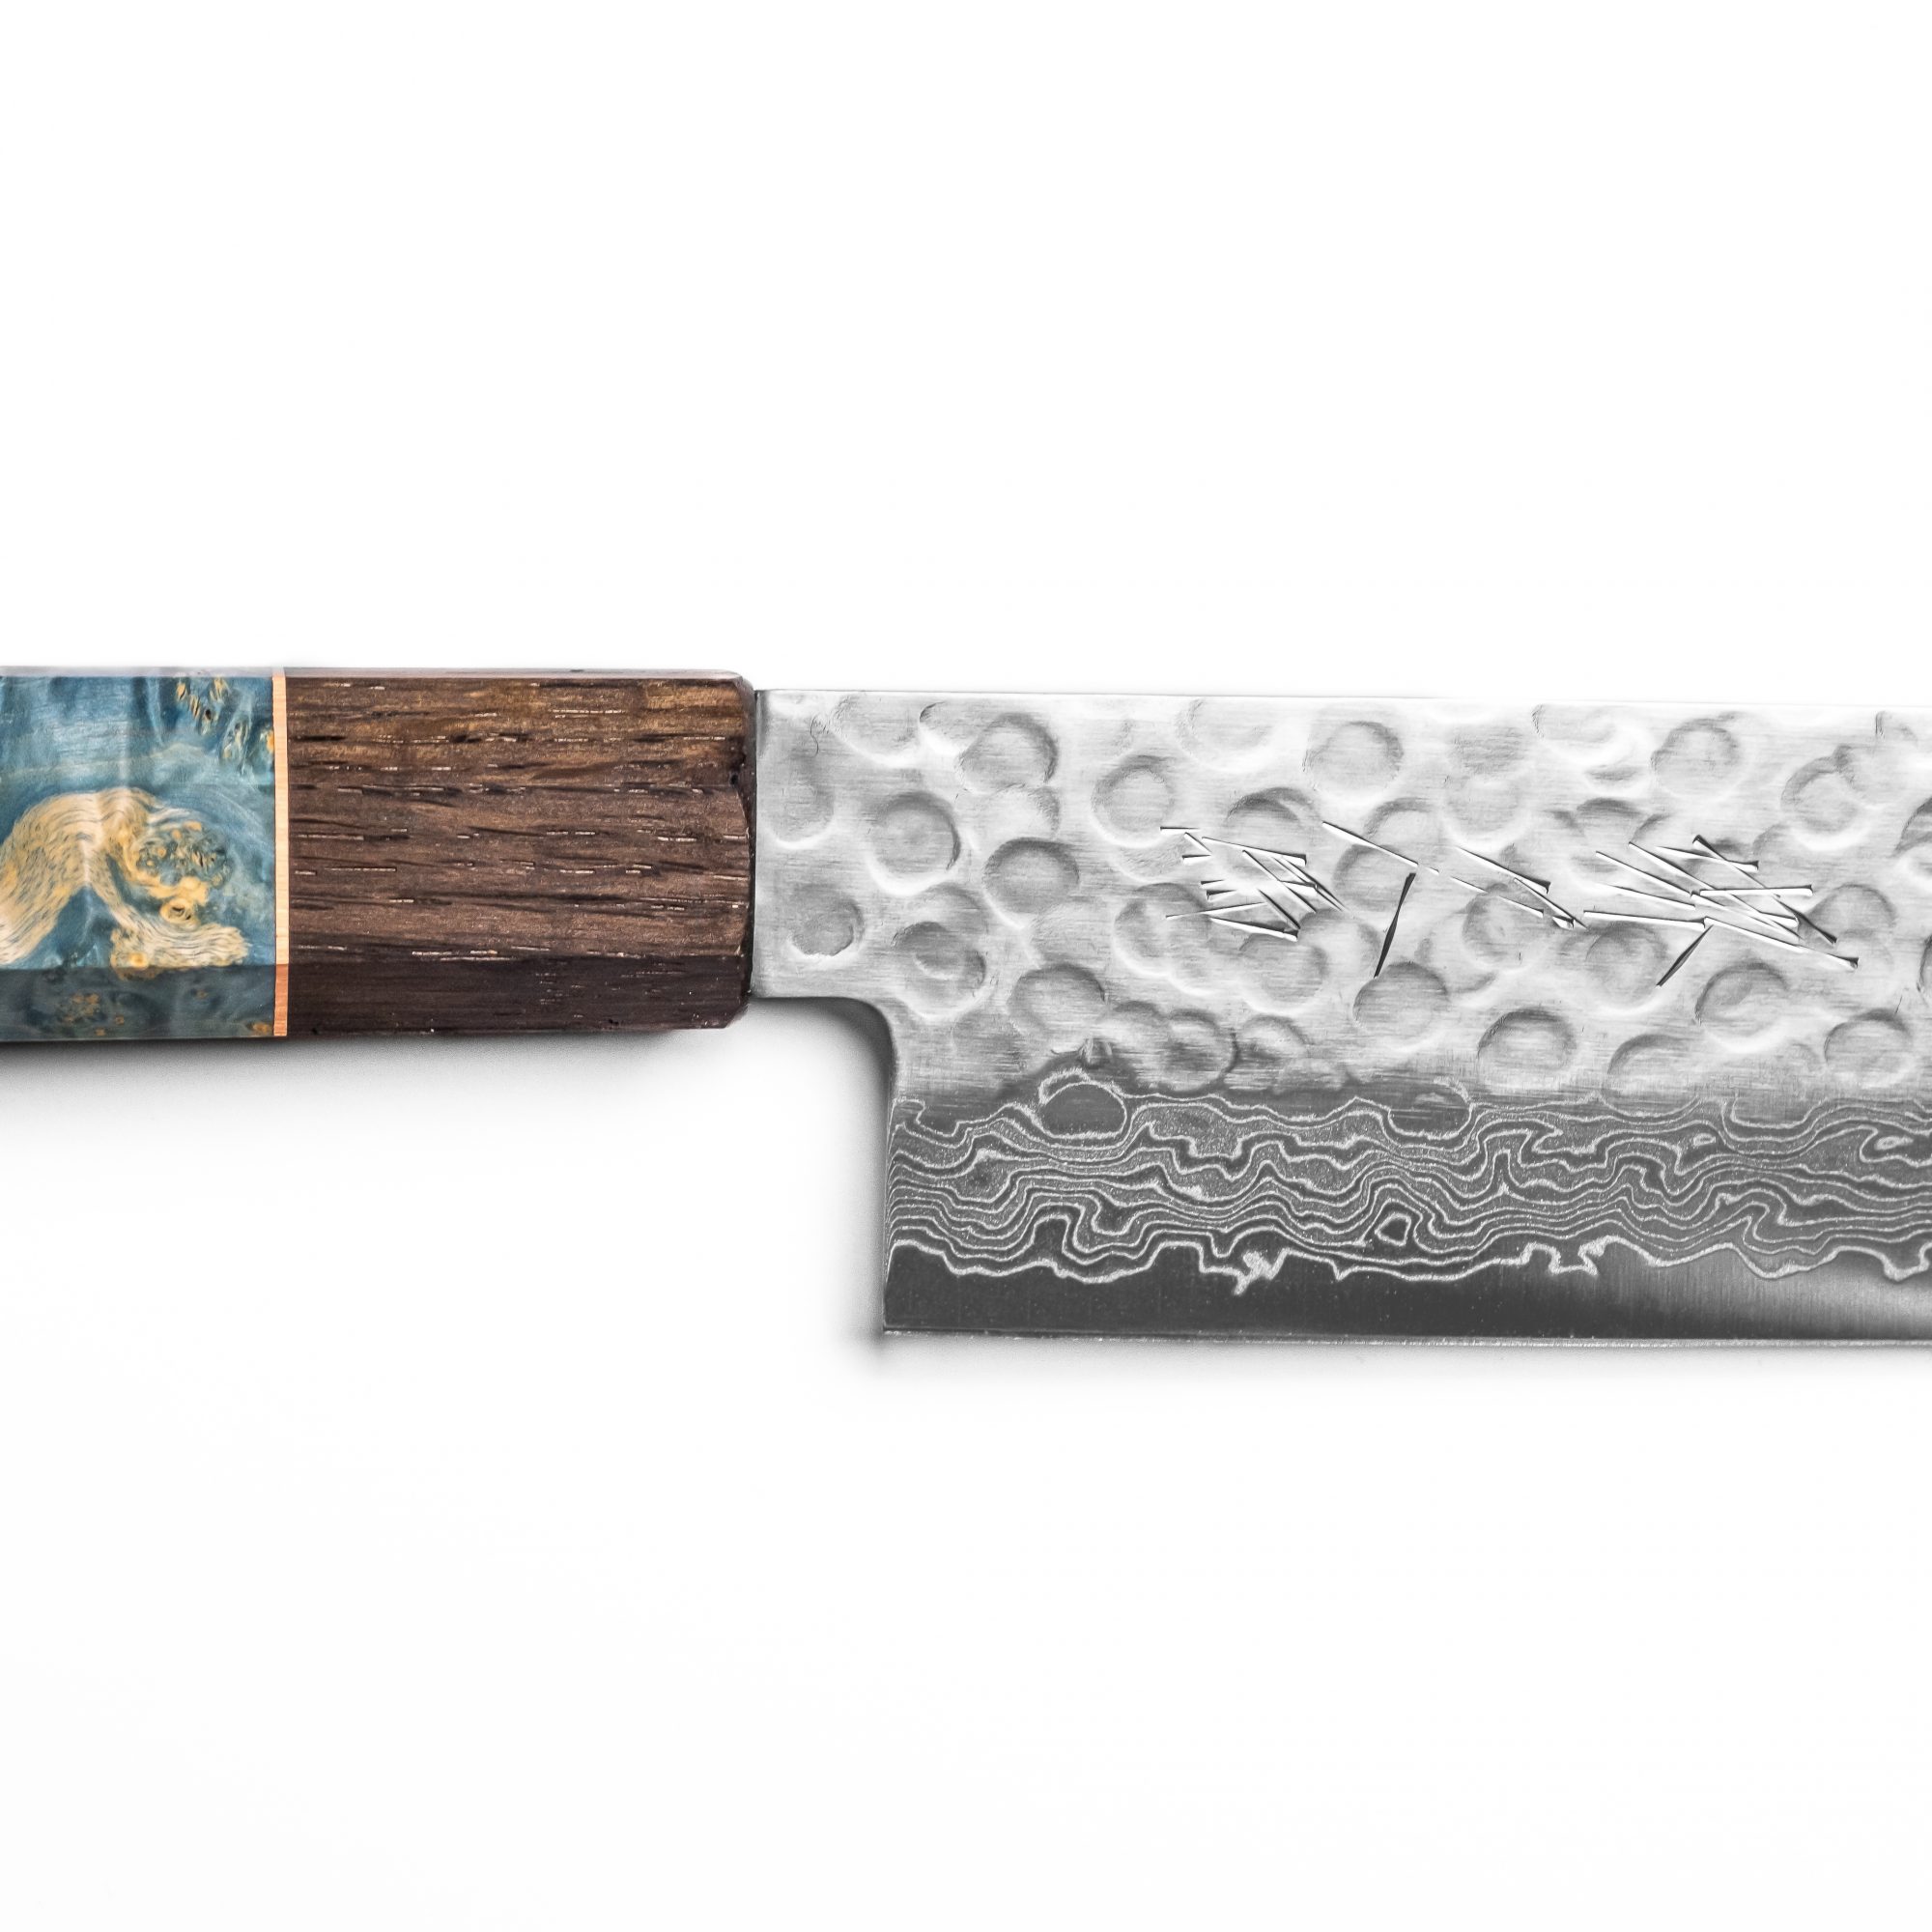 Sakai Kyuba The Knife Blade Engraving Japanese – Mediterranean Blue